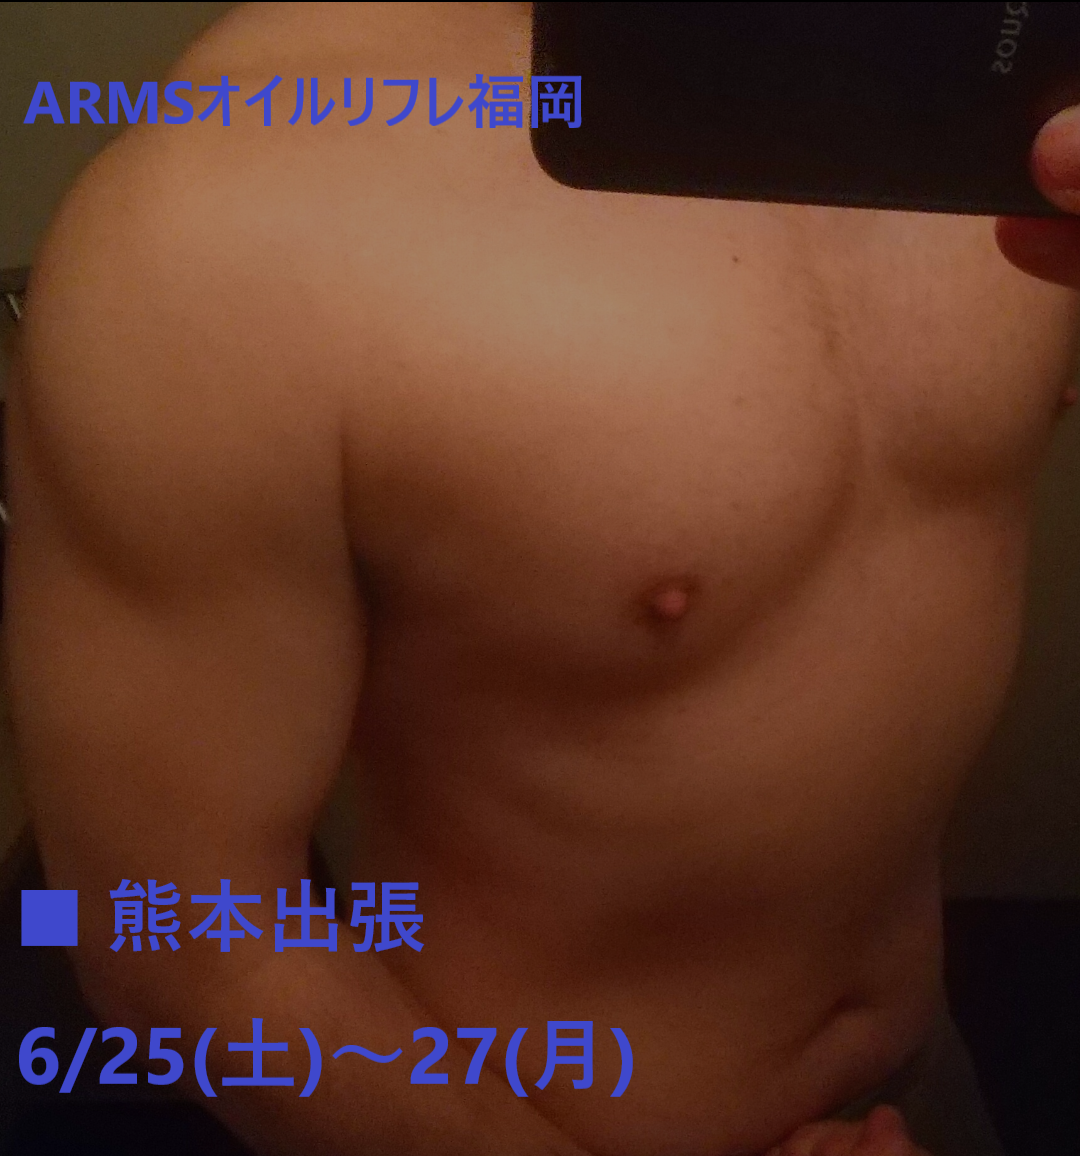 ■熊本出張■　6/25(土)～27(月)　ARMSオイルリフレ福岡